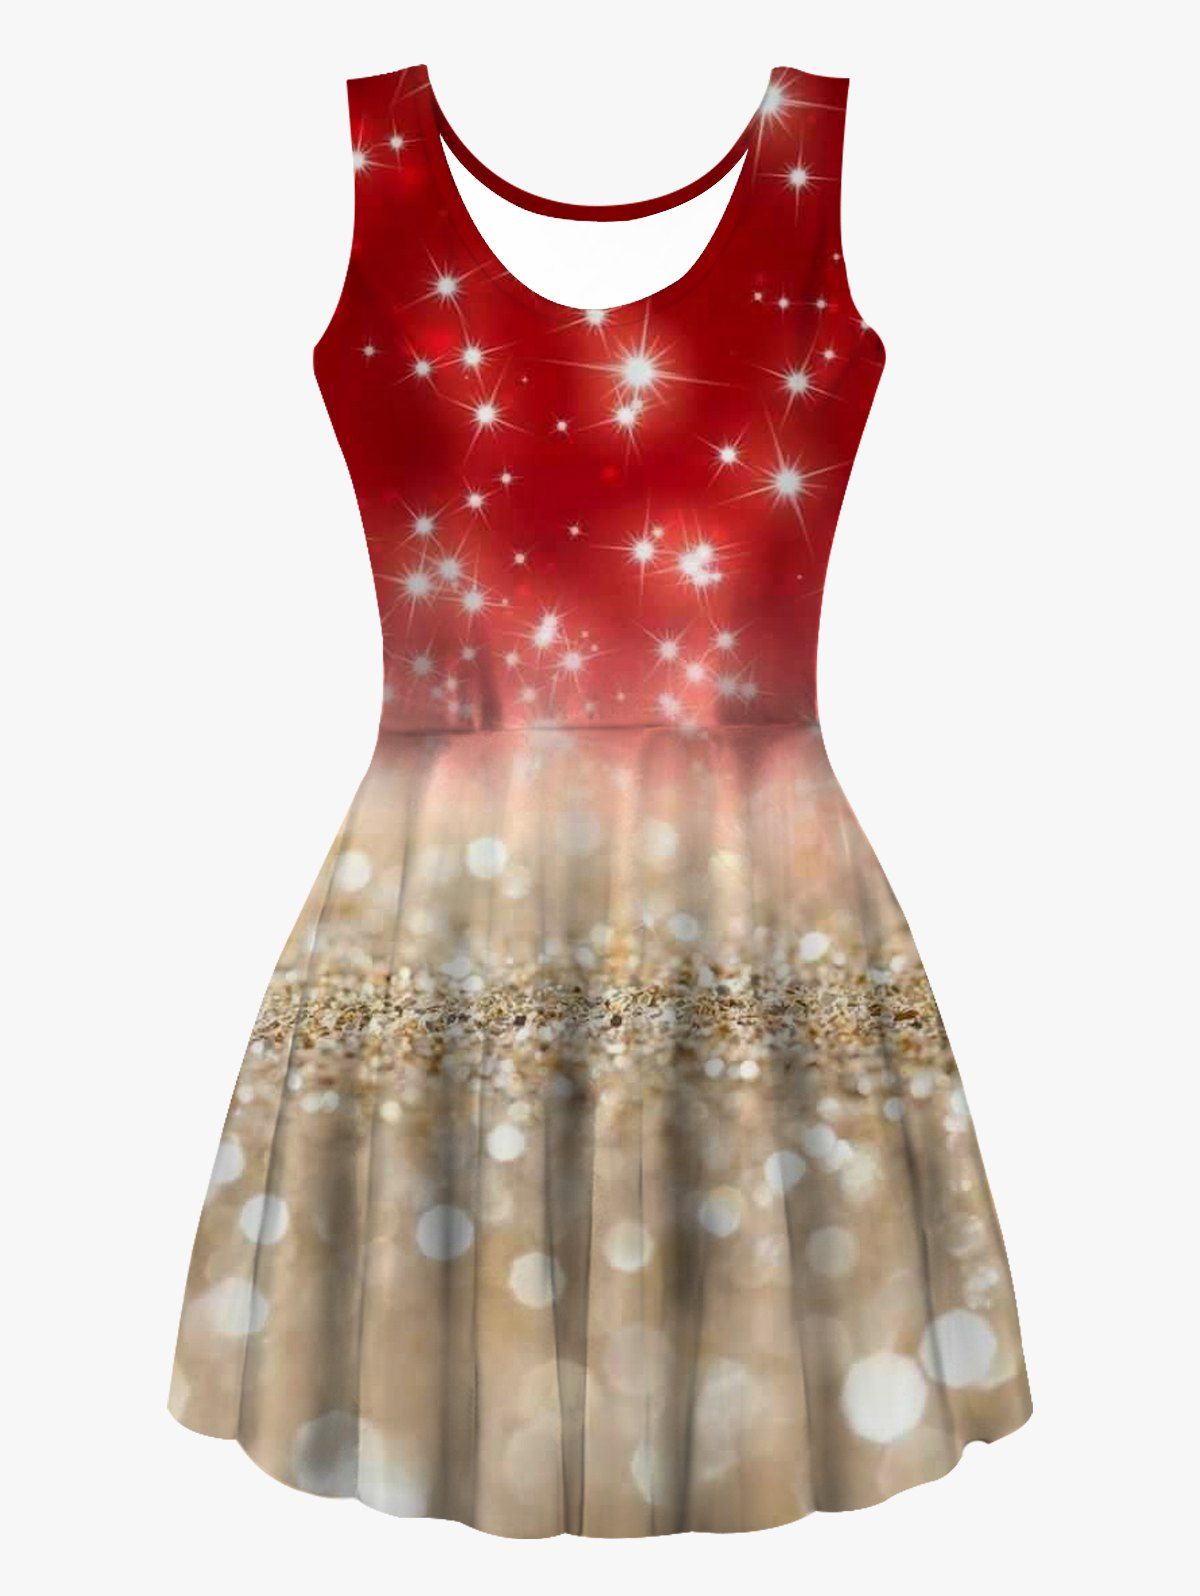 Light Spots Print High Waist Tank Dress Sleeveless Casual Scoop Neck Dress - multicolor XL